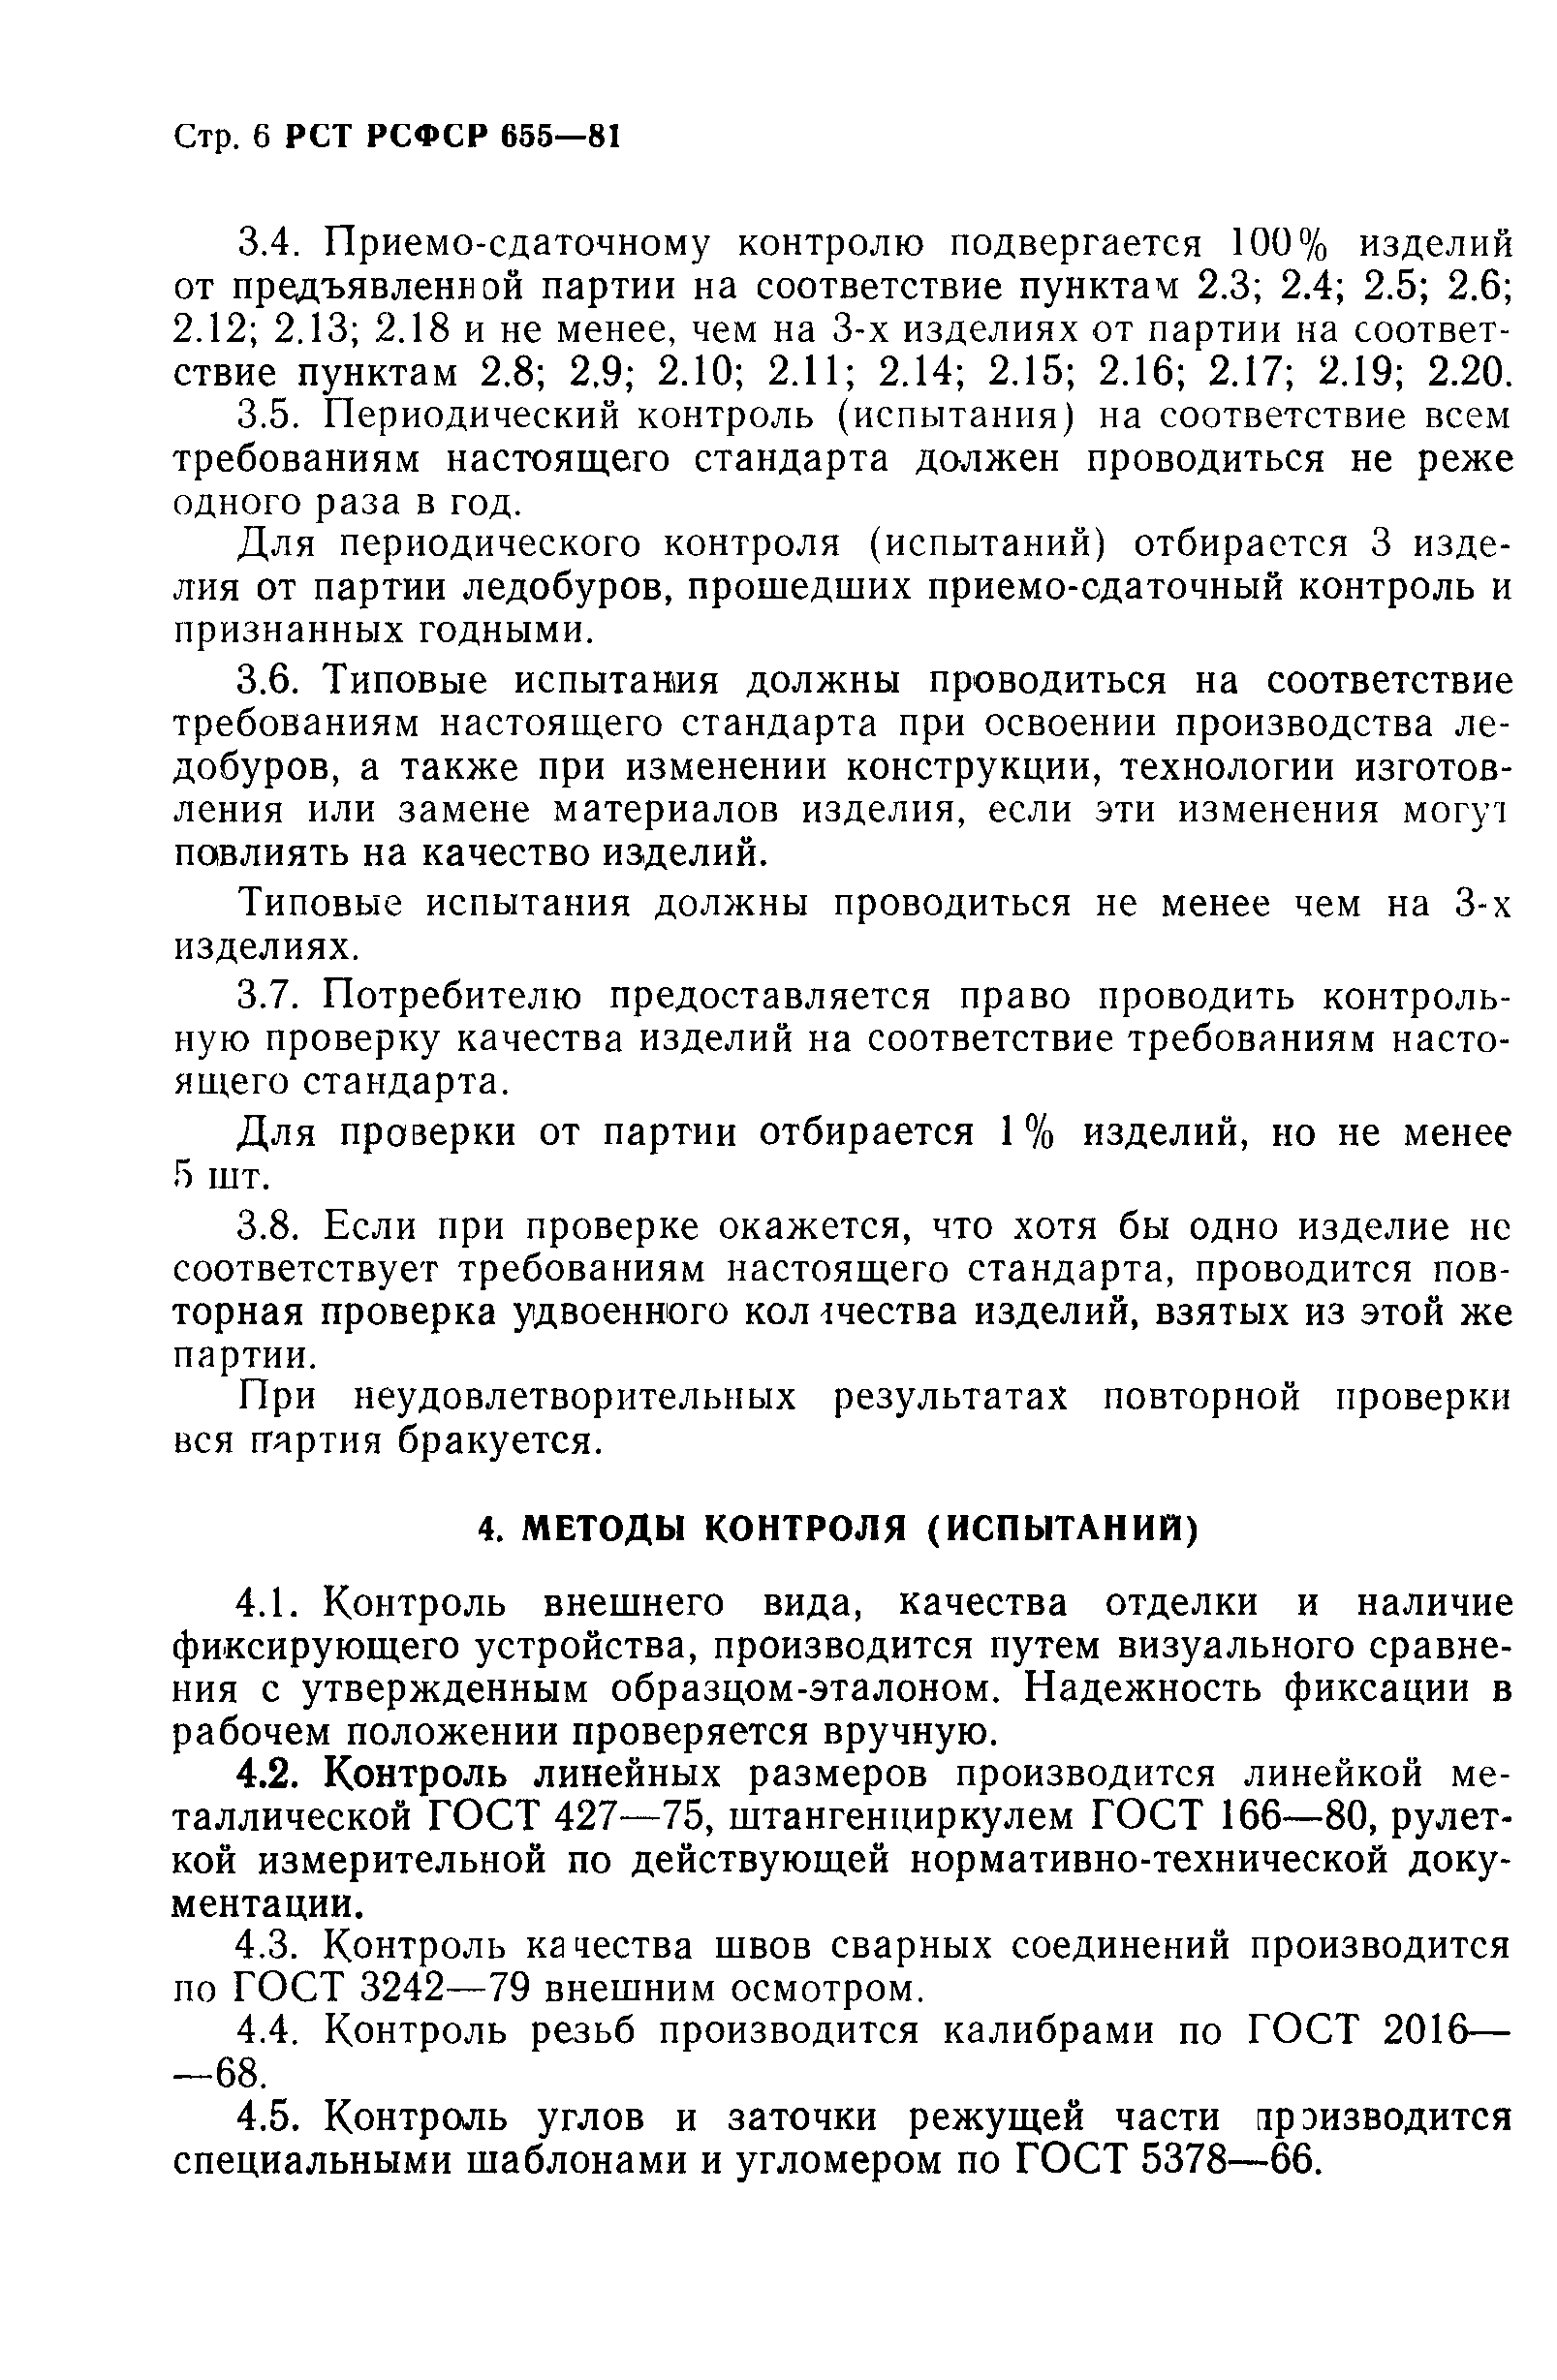 РСТ РСФСР 655-81